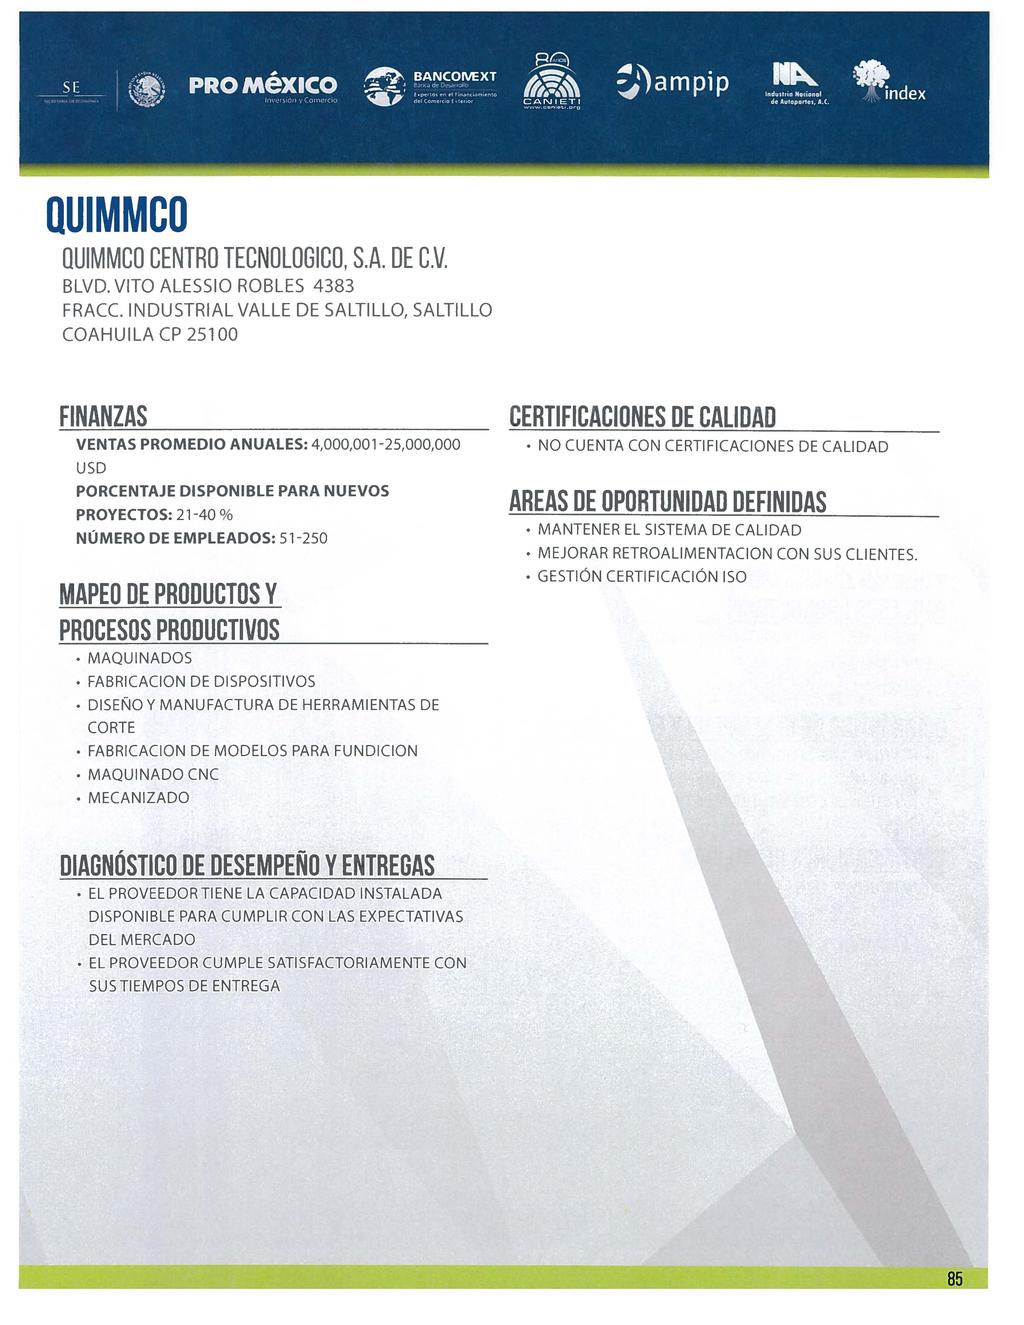 OUIMMCO QUIMMCO CENTRO TECNOLOGICO, S.A. DE C.v. BLVD. VITO ALESSIO ROBLES 4383 FRACC.